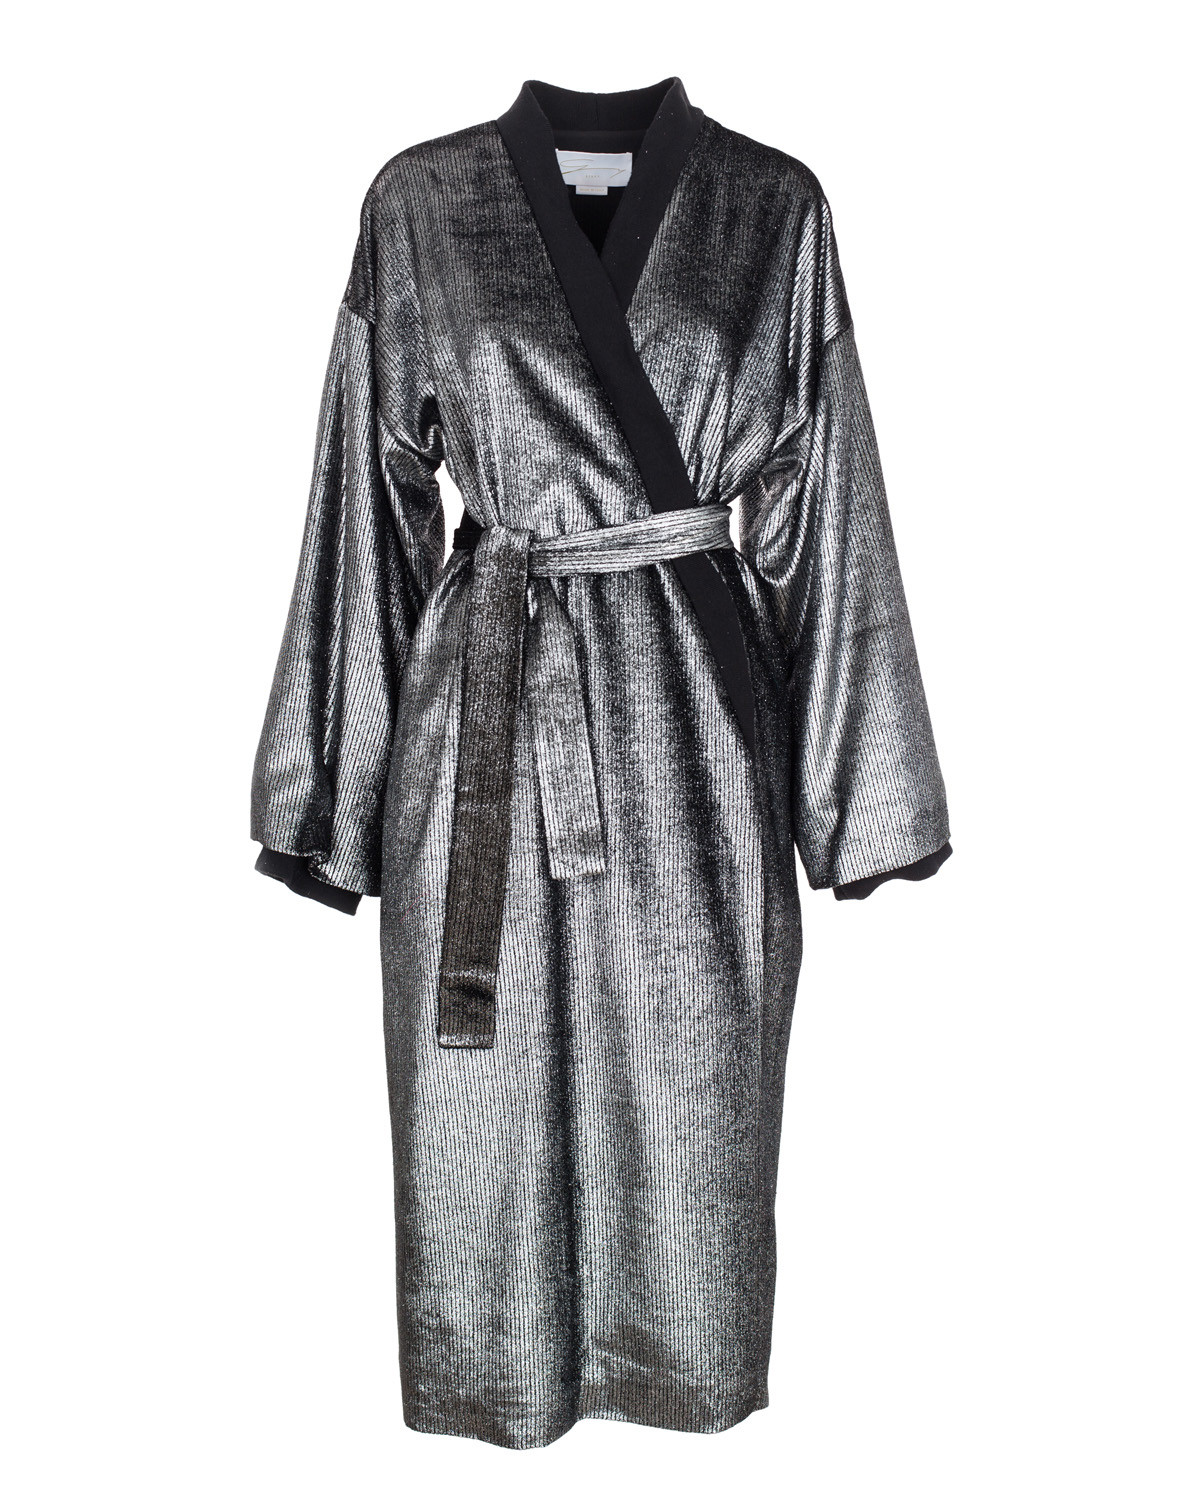 Trenchcoat robe in lamé velvet